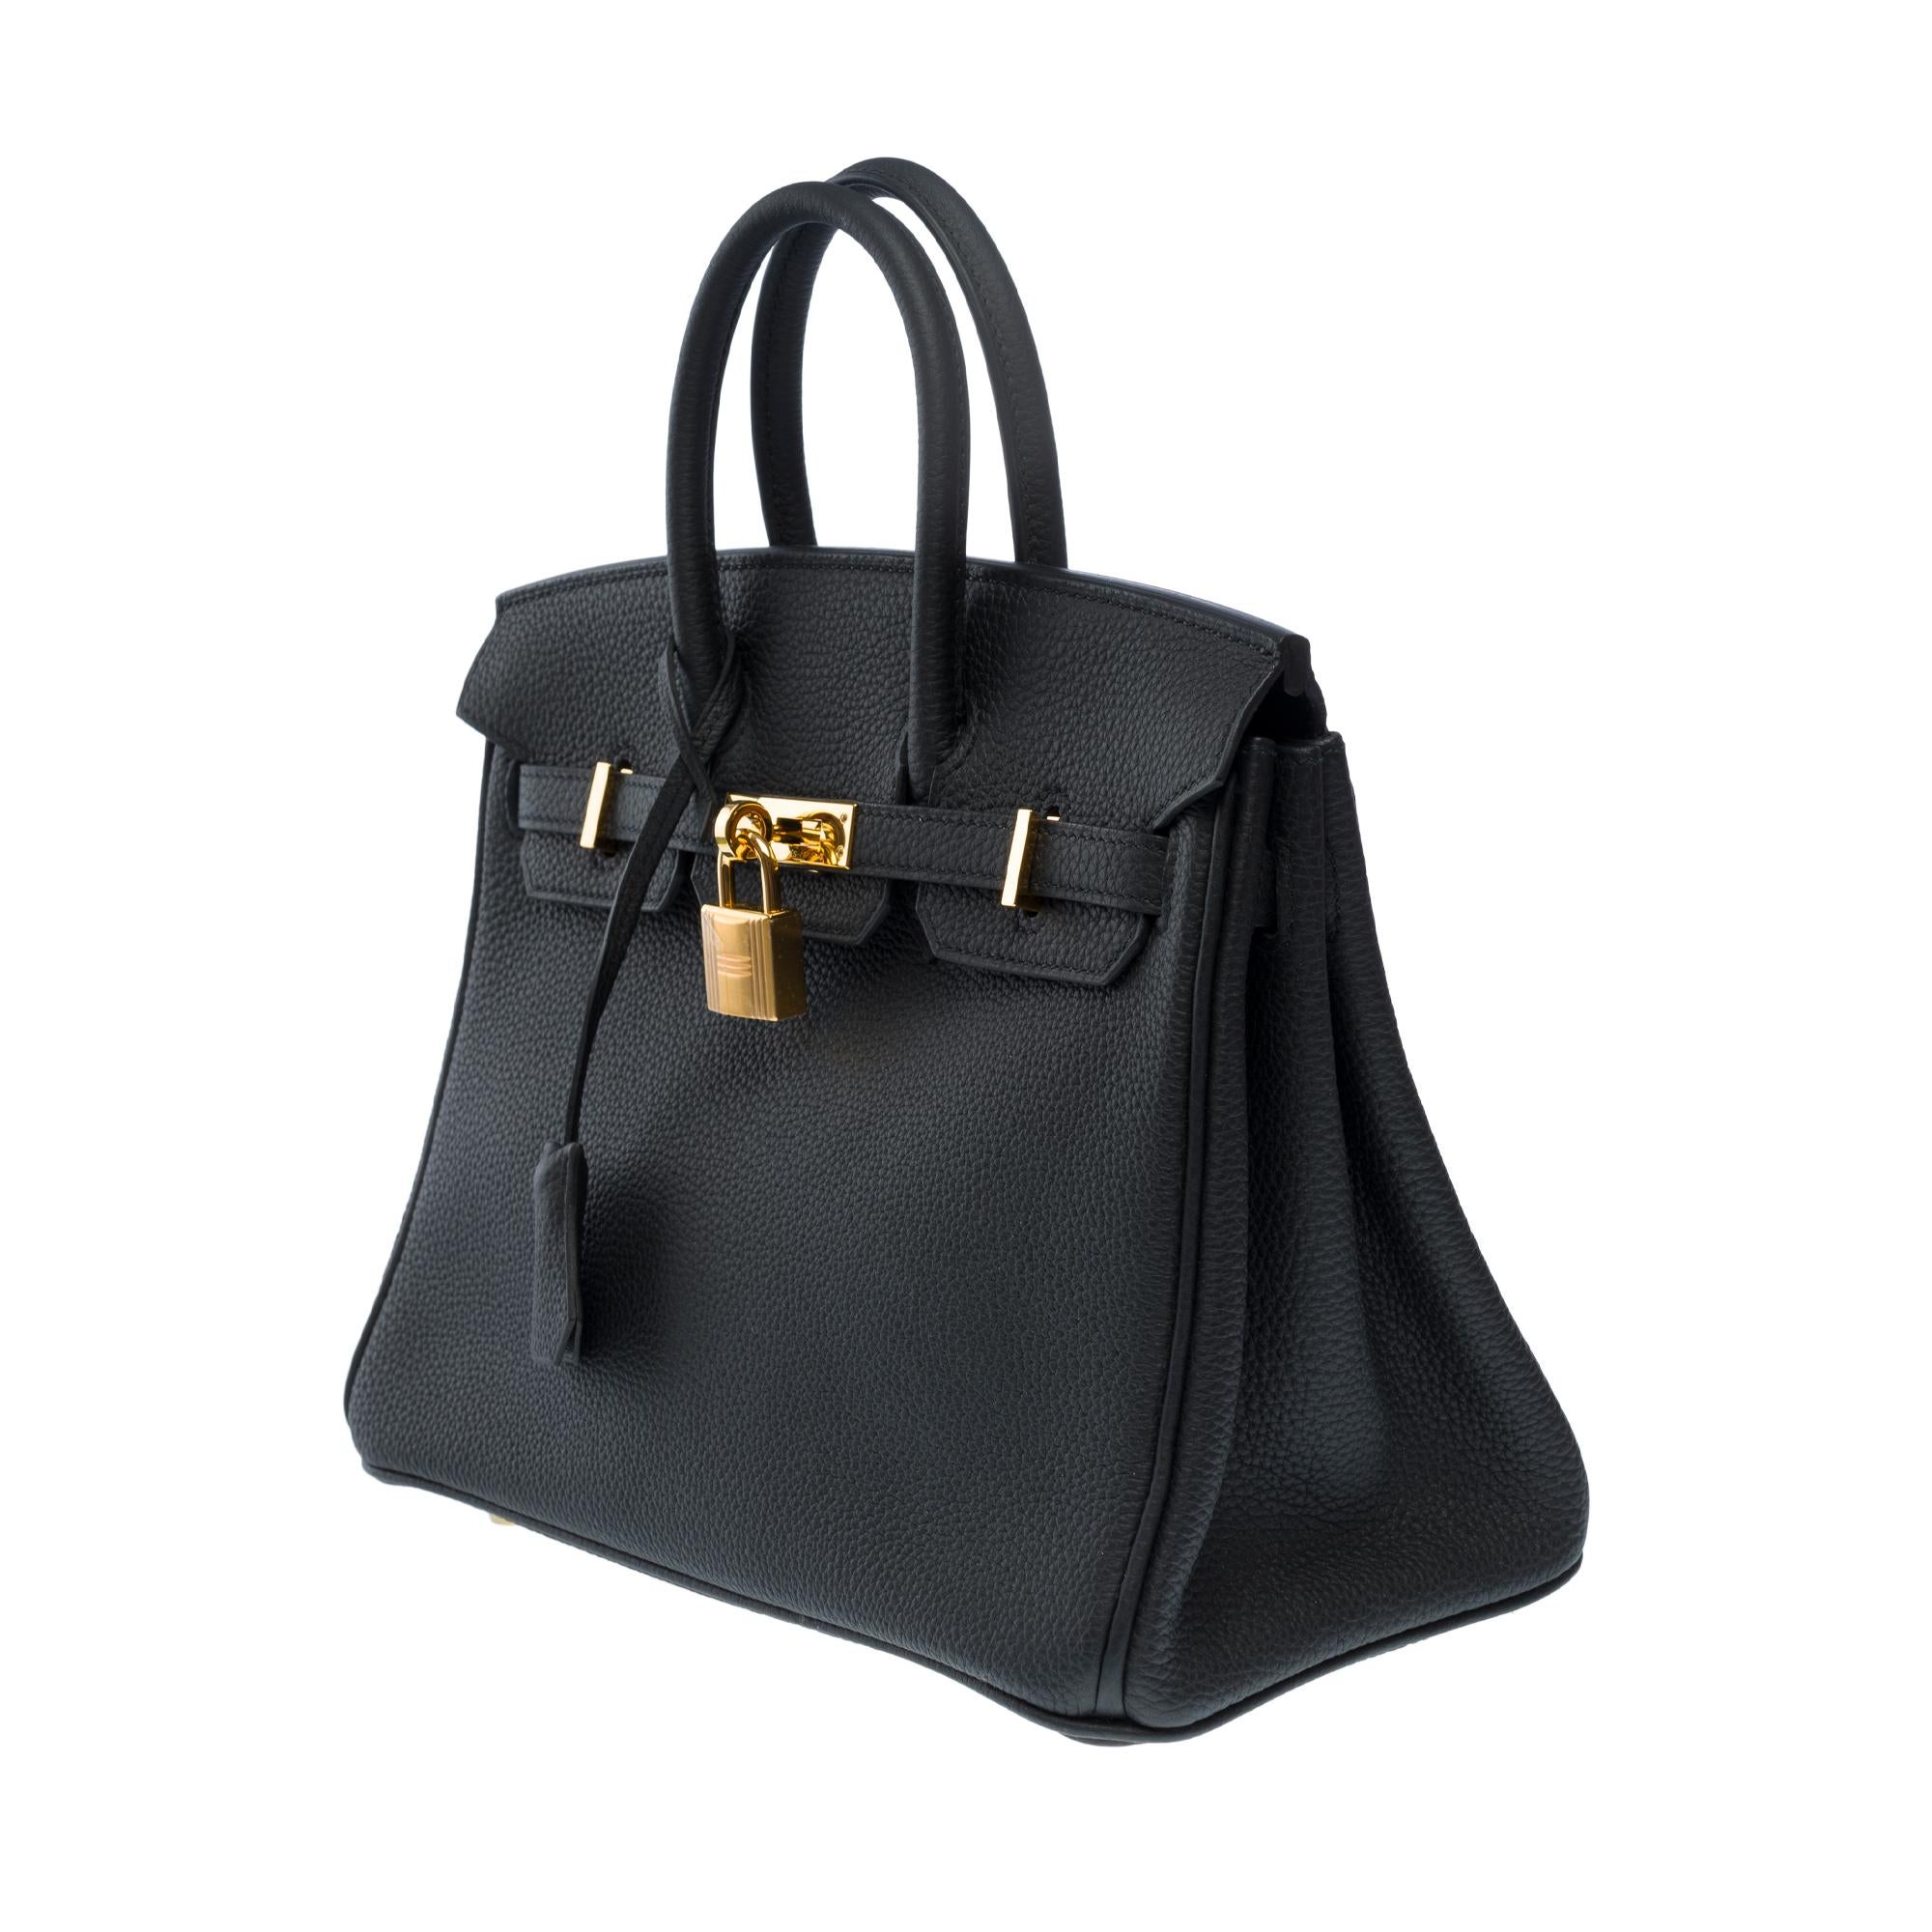 Amazing Hermes Birkin 25 handbag inBlack Togo leather, GHW For Sale 1